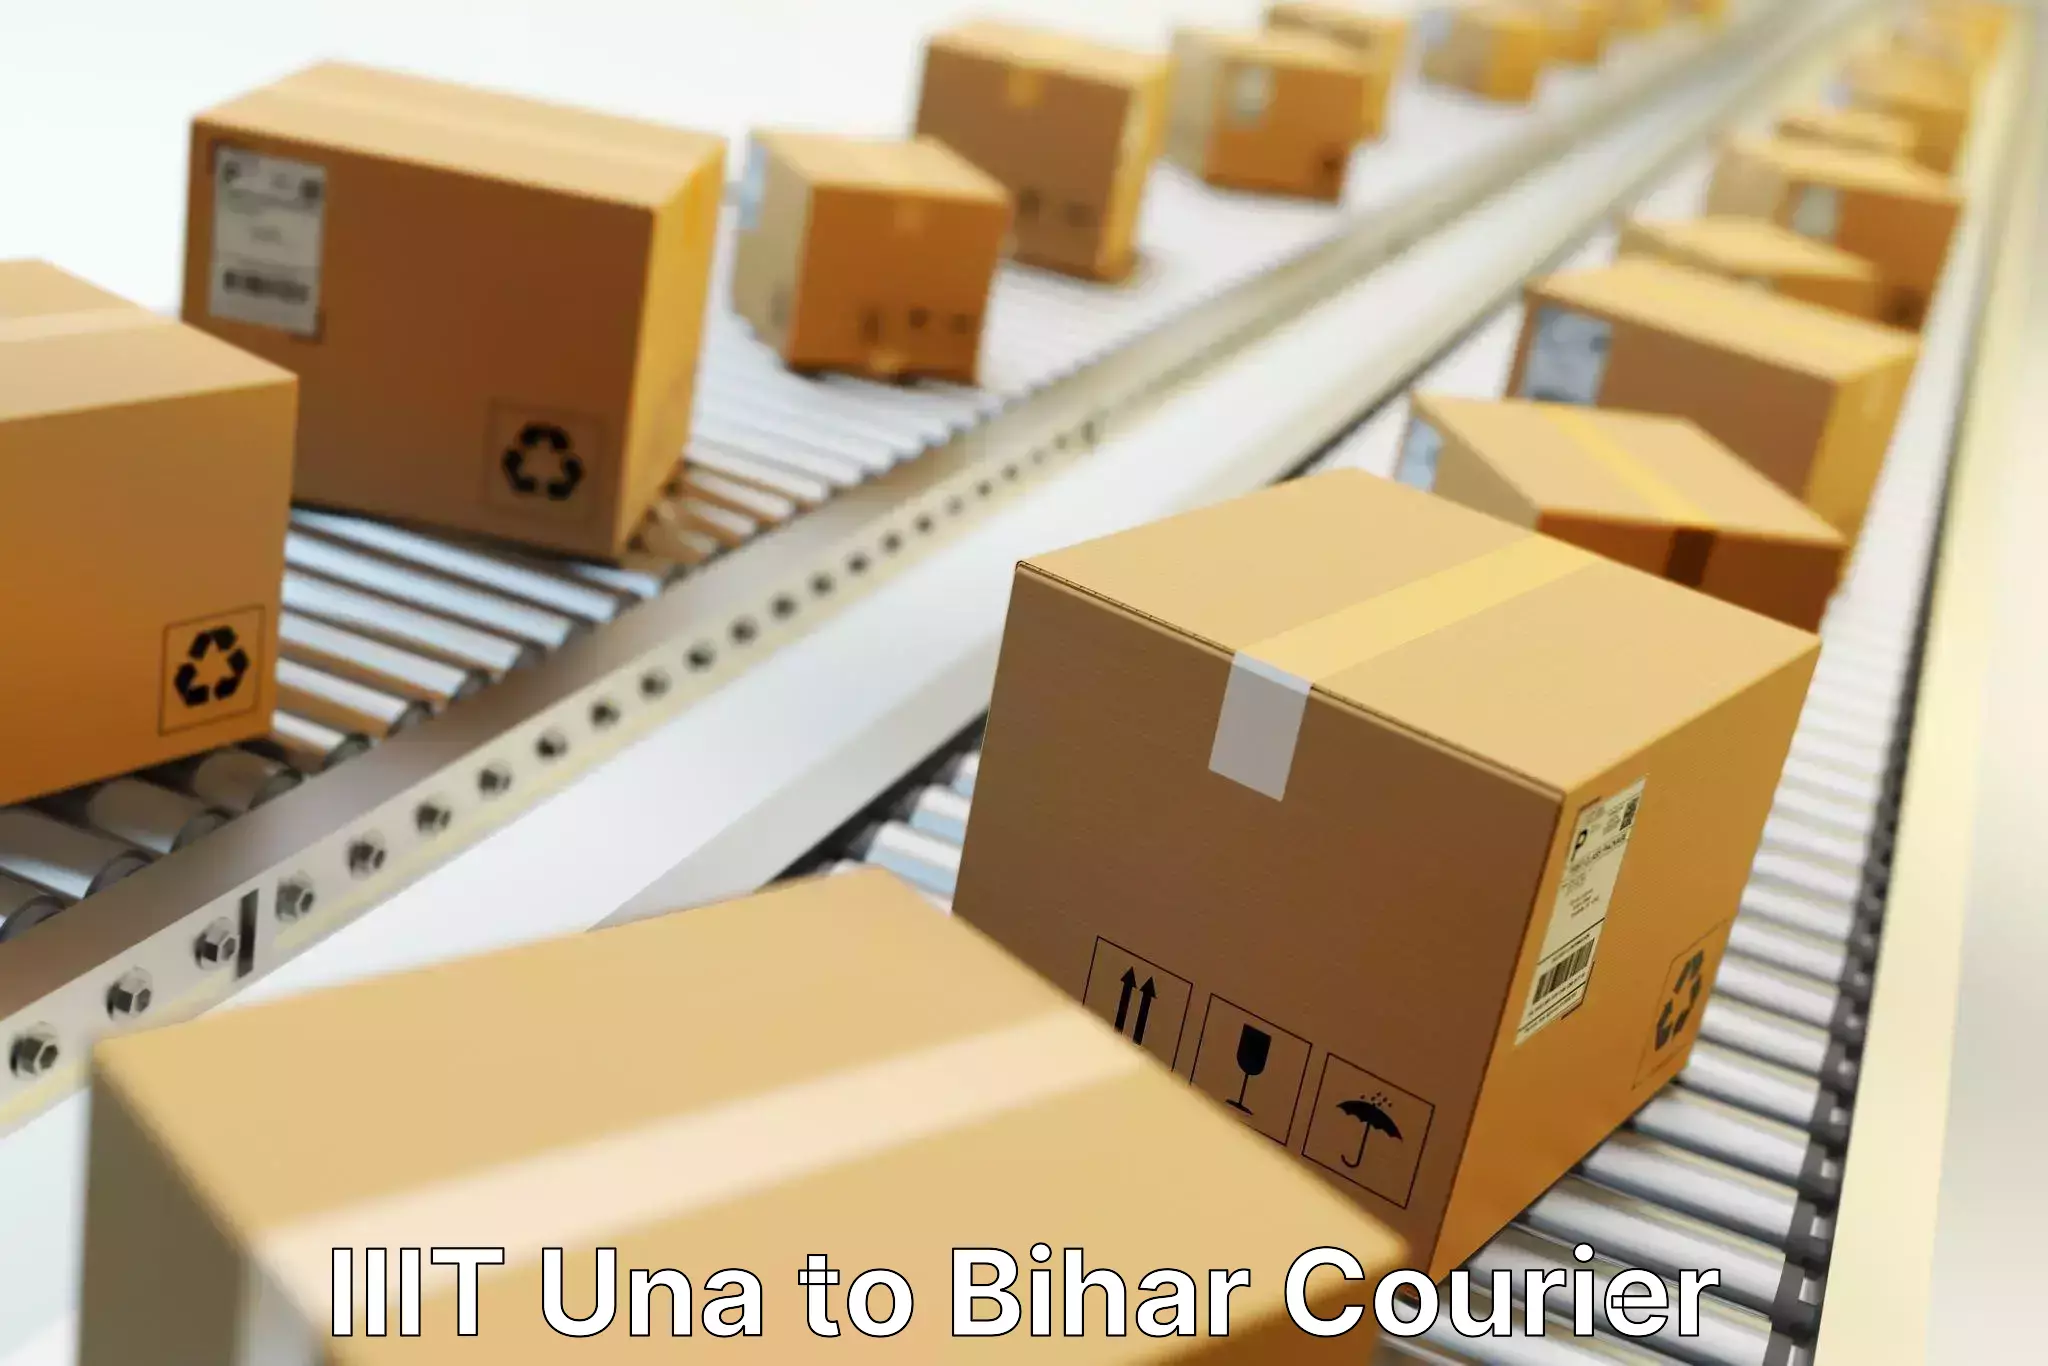 Reliable package handling IIIT Una to Bakhri